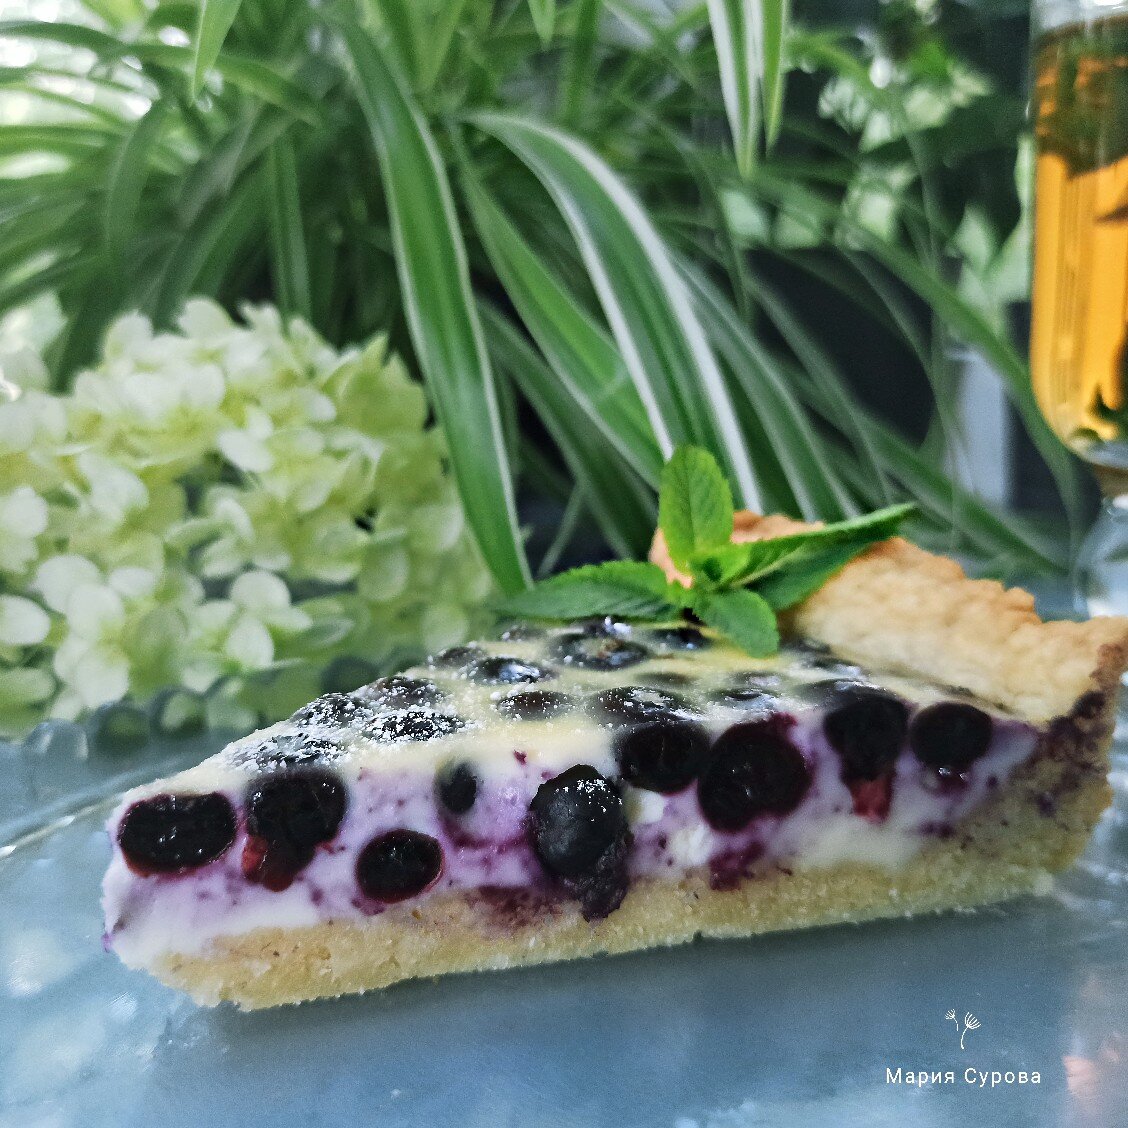 Финский пирог с черникой, пошаговый рецепт с фото на ккал